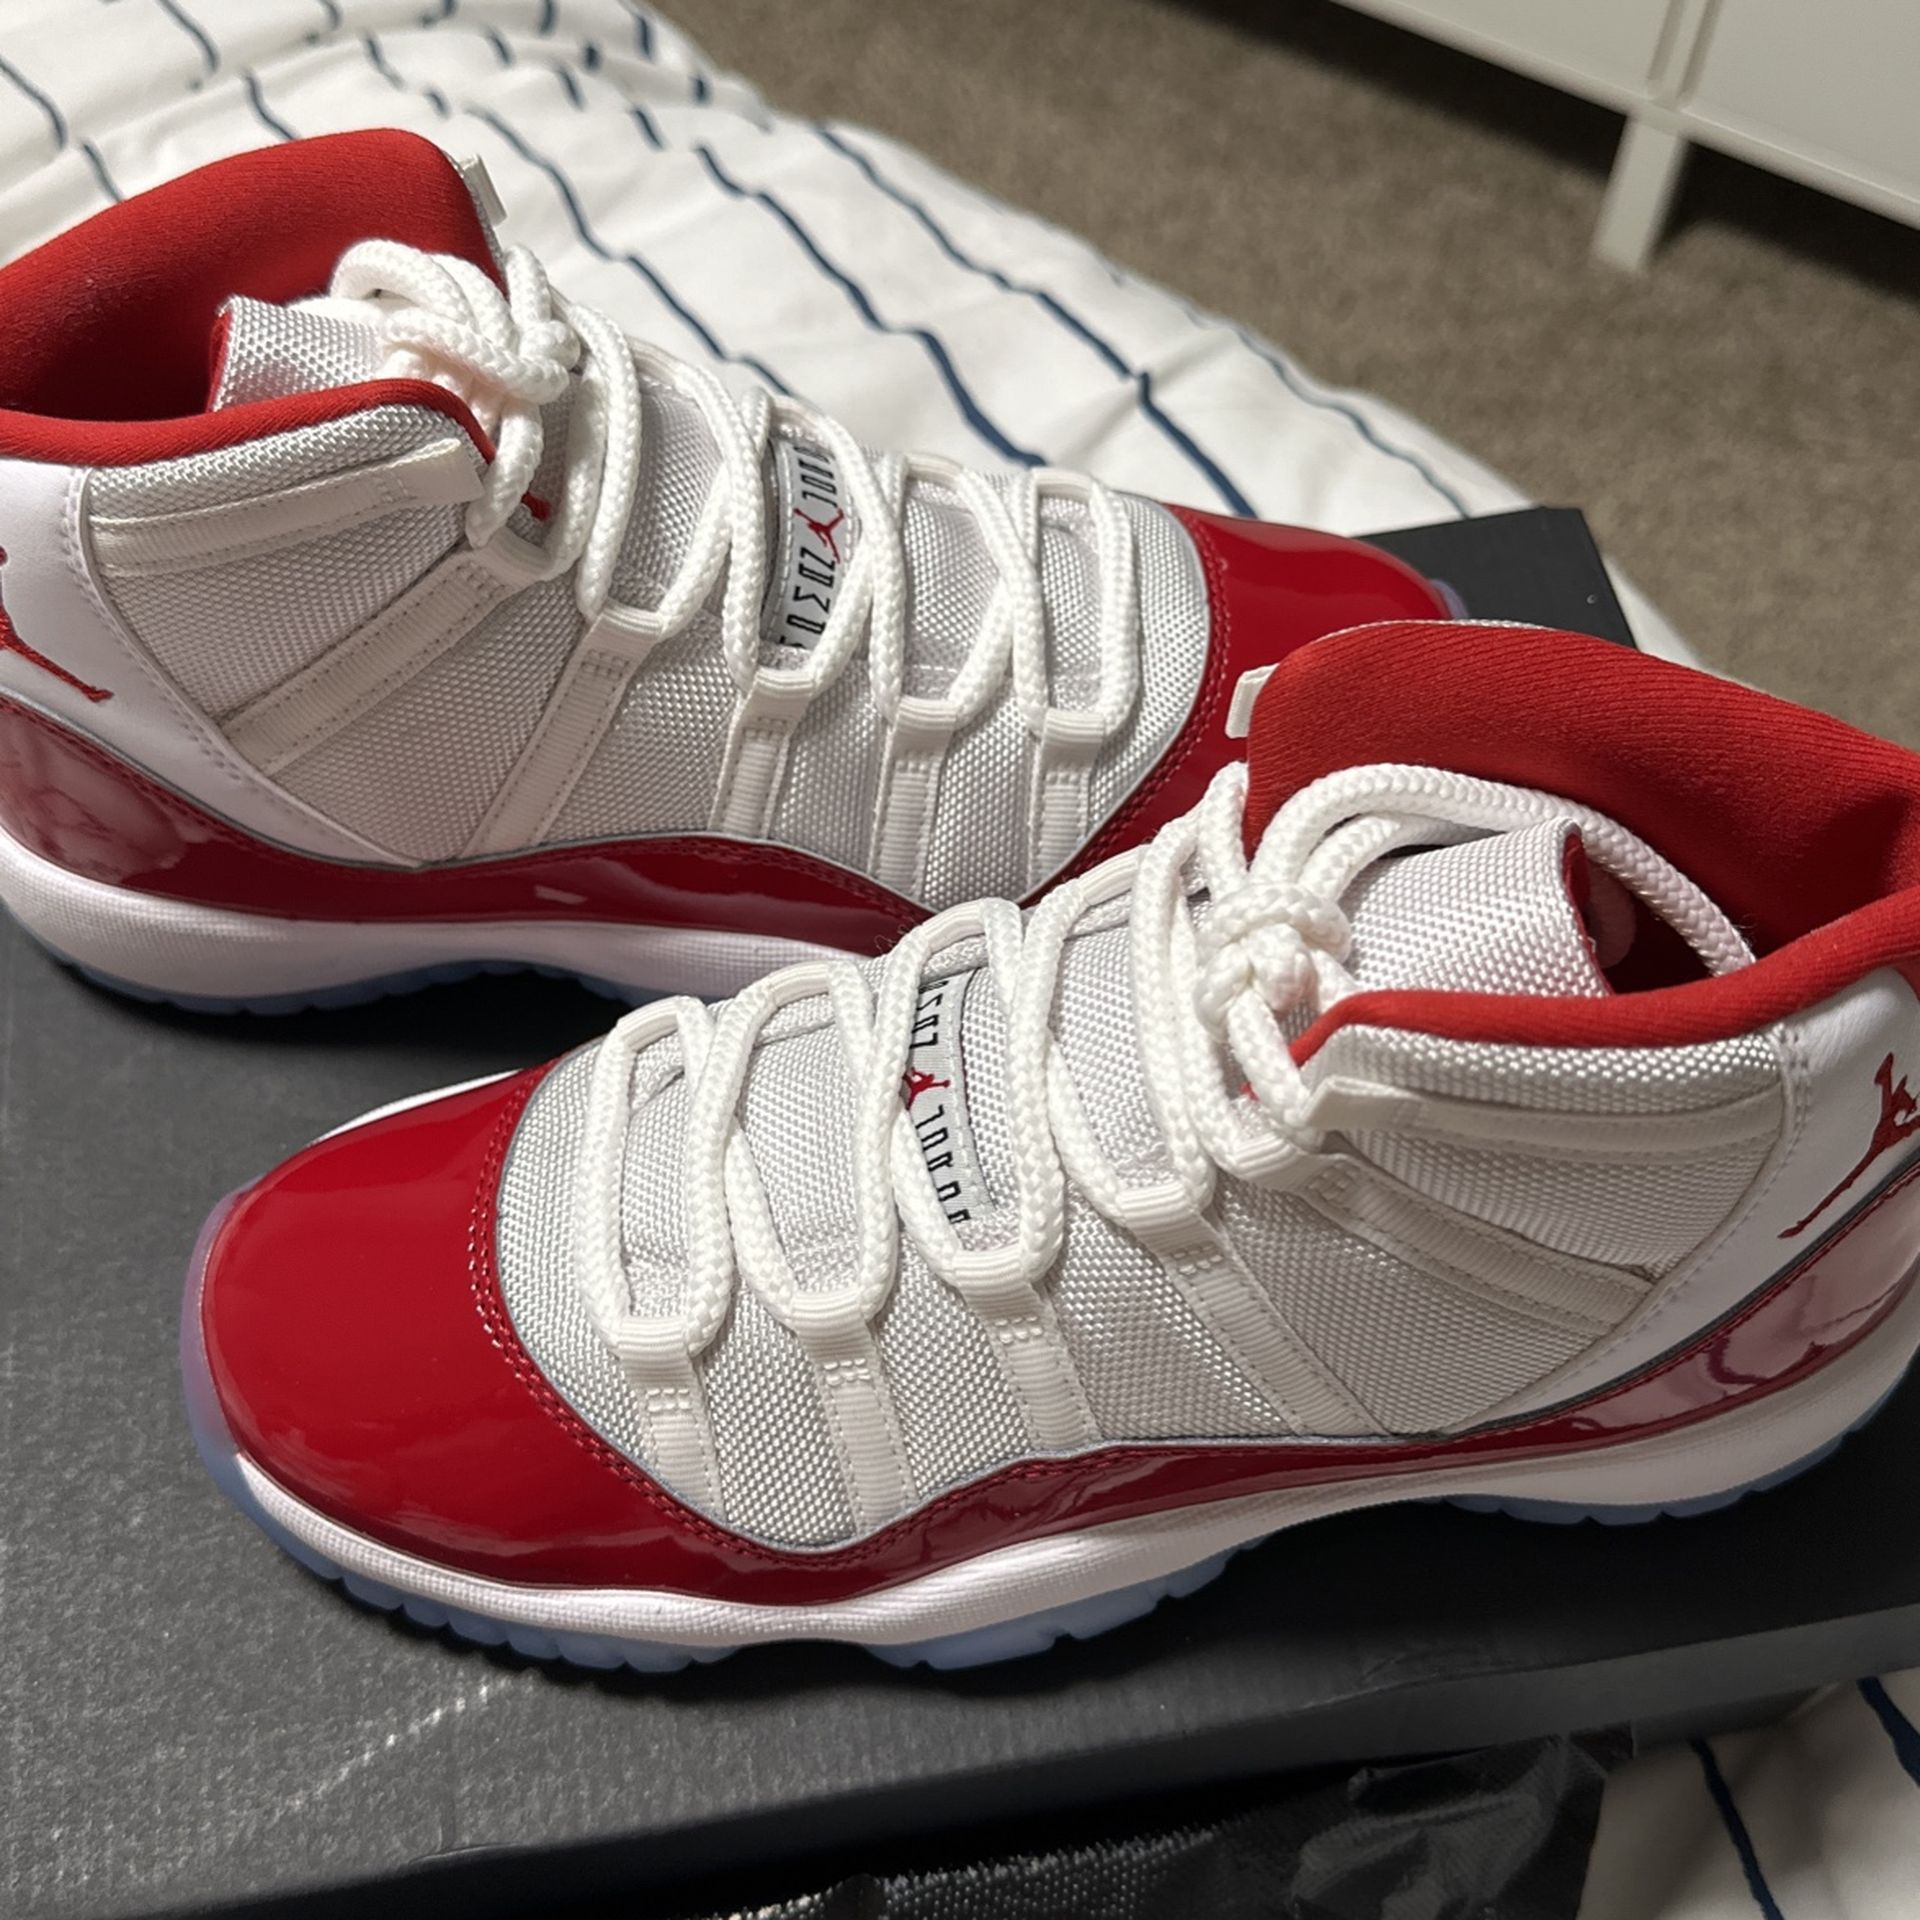 Air Jordan 11 Retro Low (Derek Jeter) 'RE2PECT' Basketball Sneakers – Size  10.5 for Sale in Seattle, WA - OfferUp